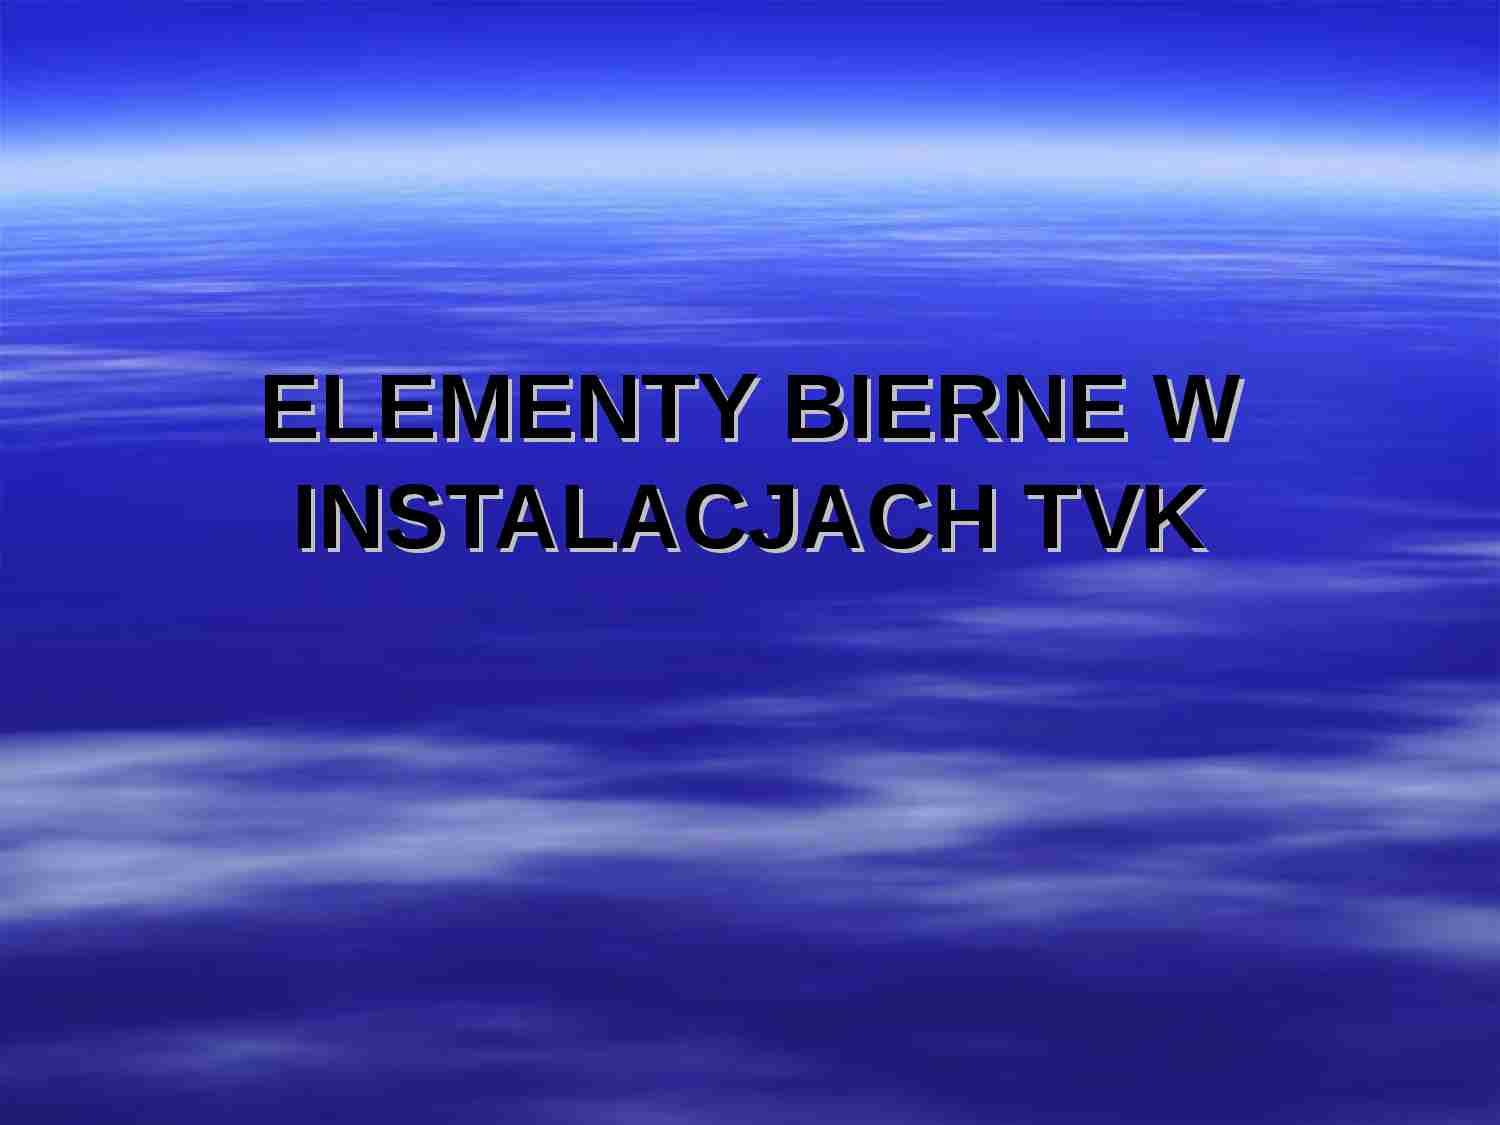 Elementy bierne w instalacjach TVK - strona 1